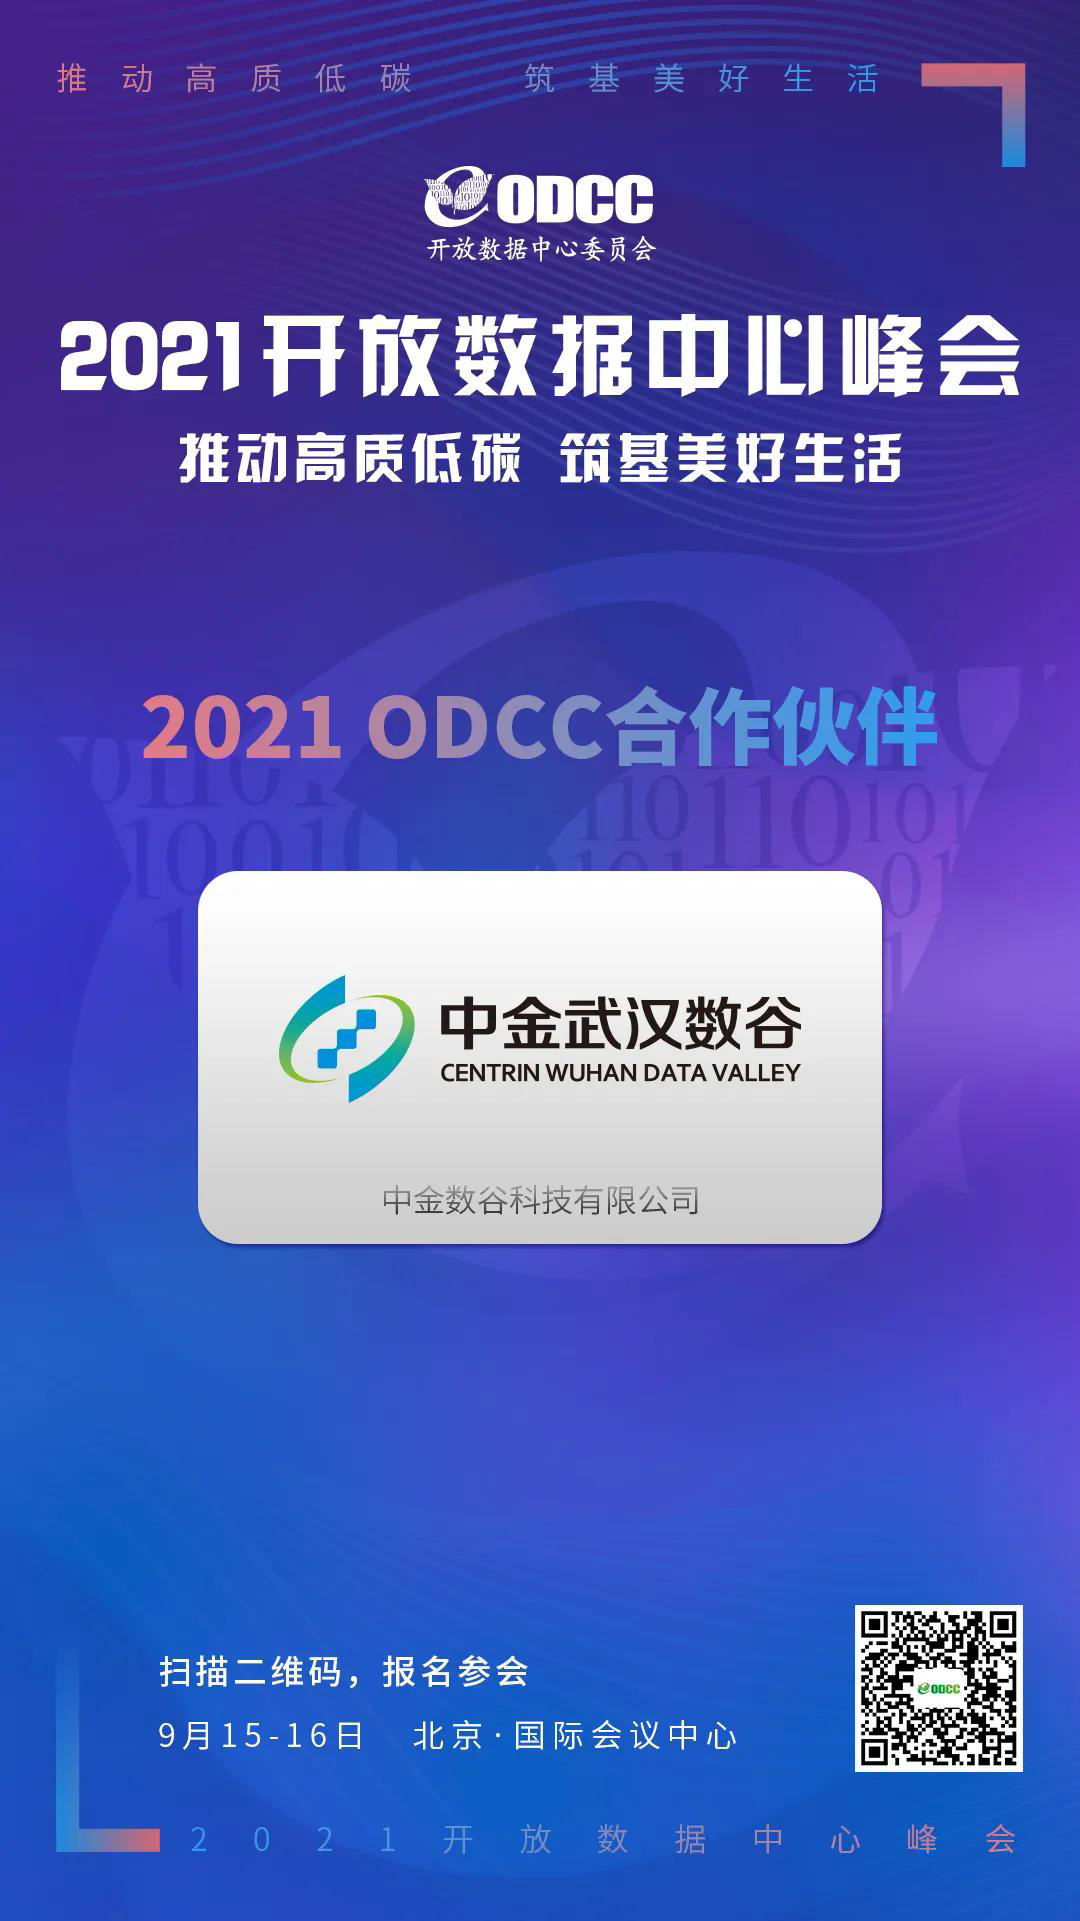 中金数谷受邀参展ODCC 2021开放数据中心峰会